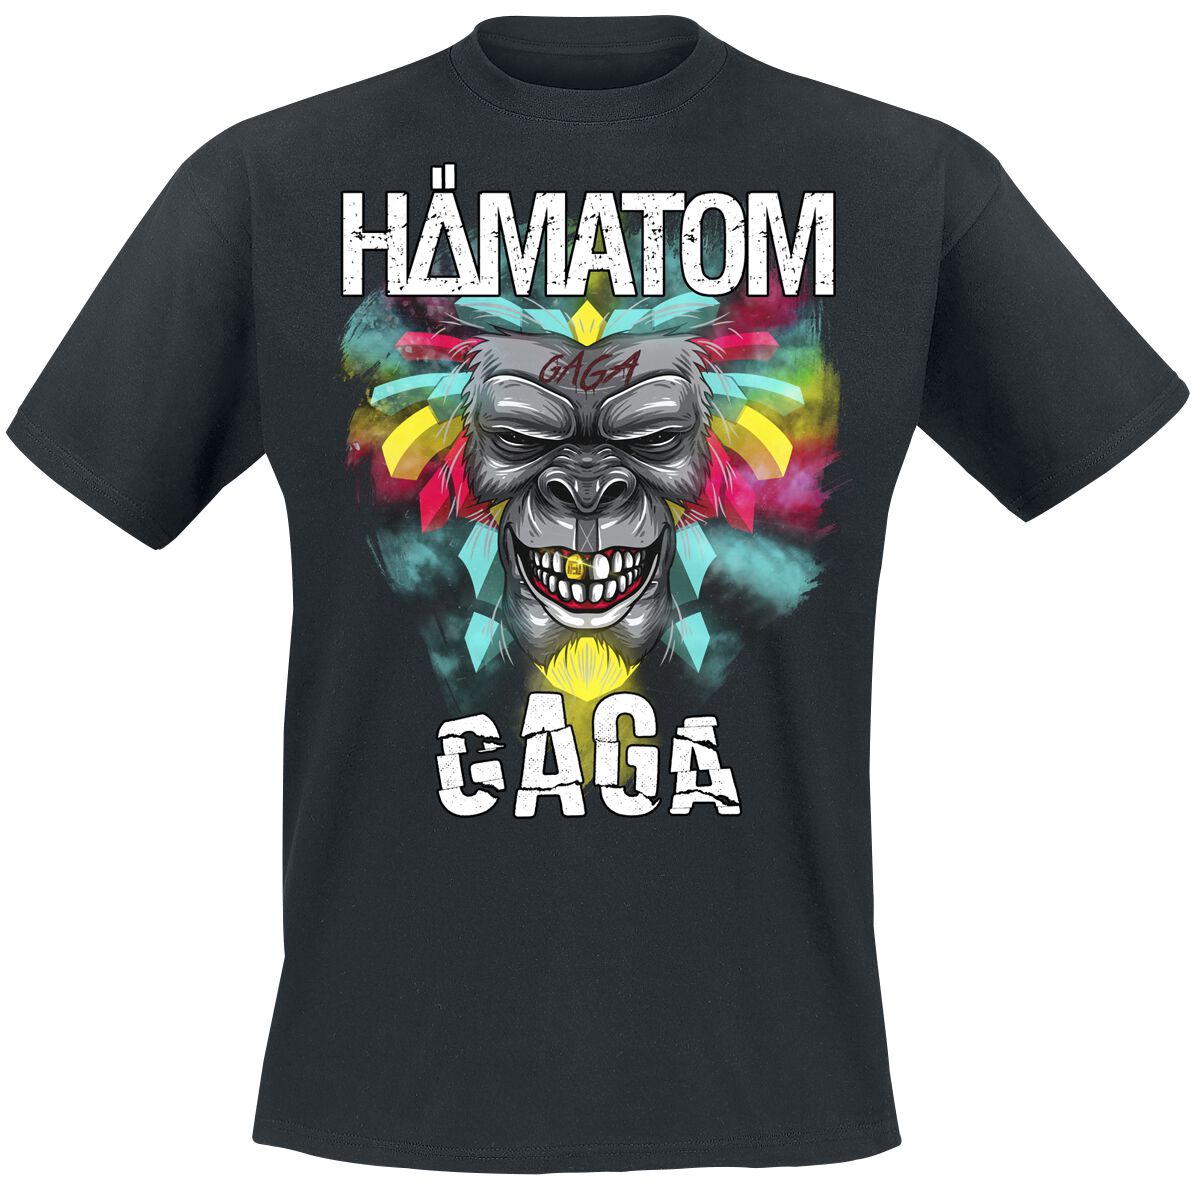 Hämatom T-Shirt - GAGA - S - für Männer - Größe S - schwarz  - Lizenziertes Merchandise!